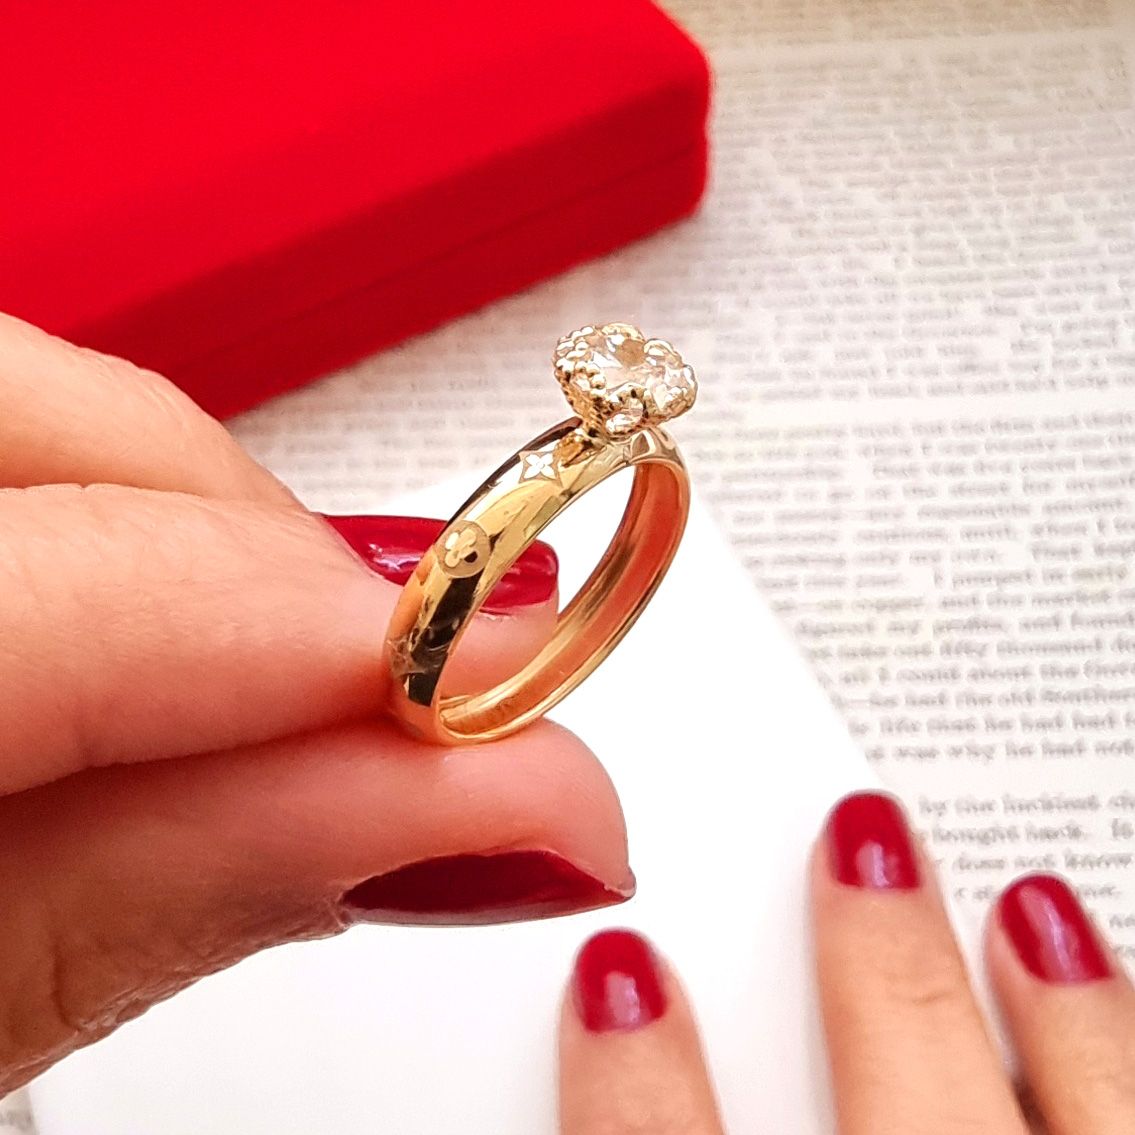 18 Karat Gold Engagement Ring